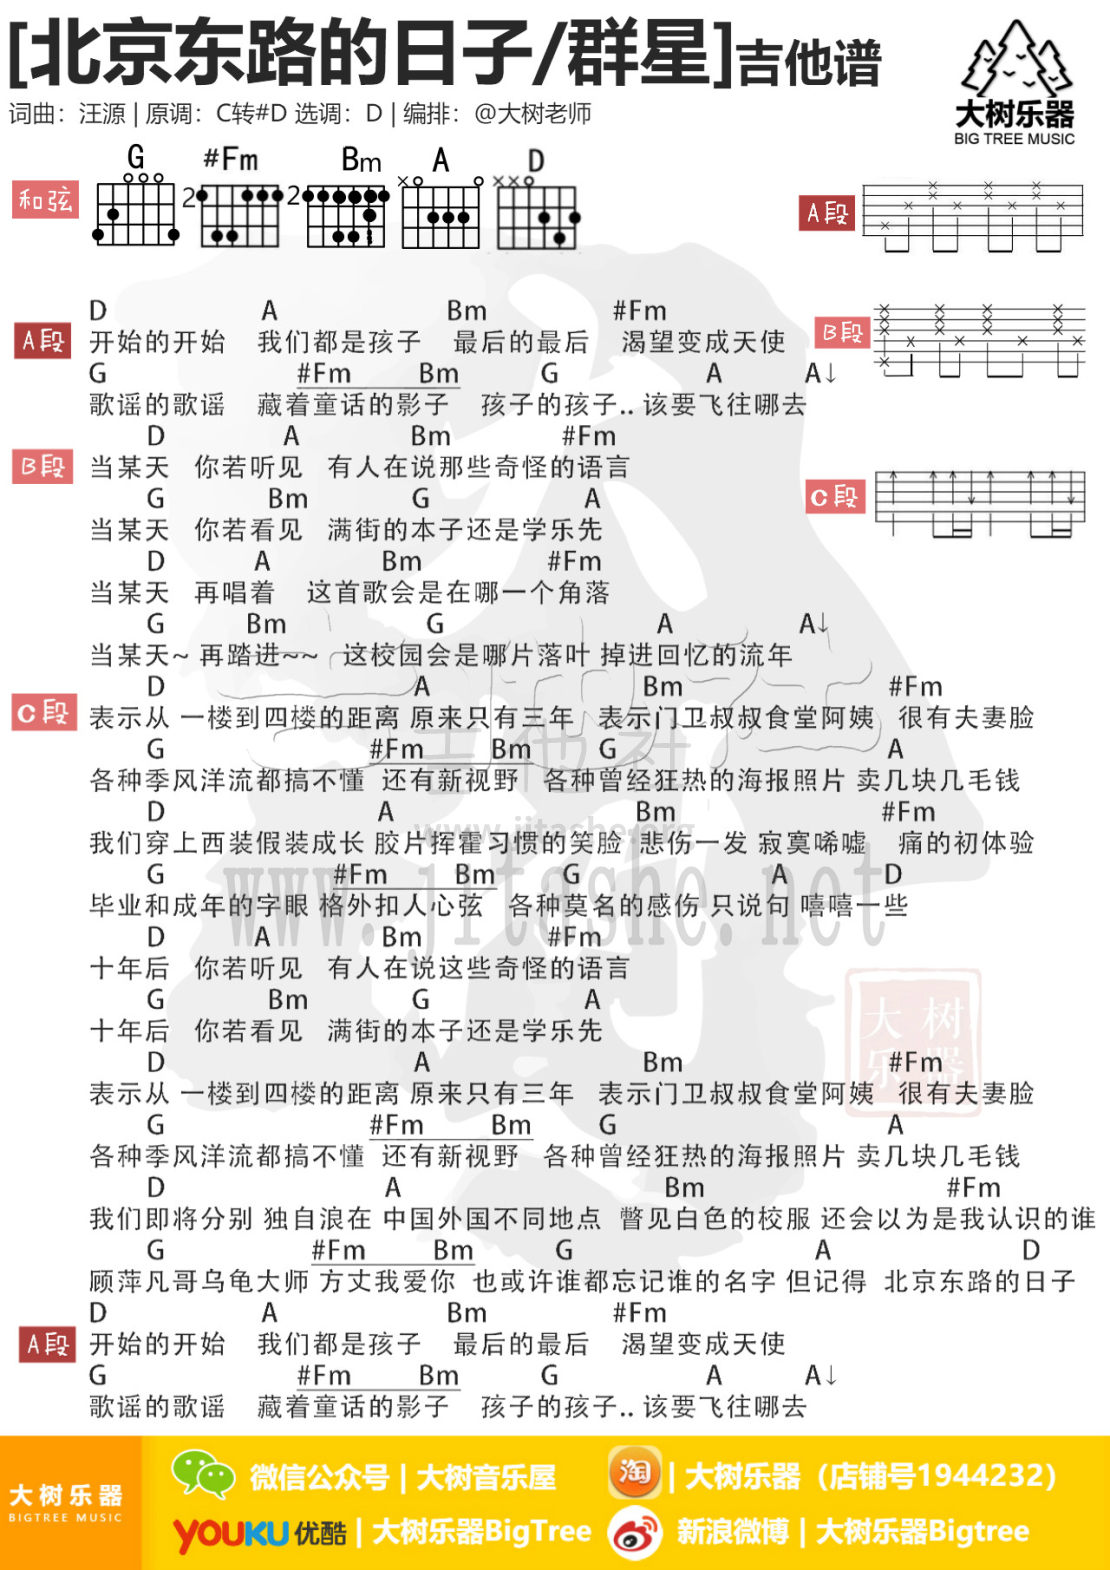 北京东路的日子吉他谱(图片谱,弹唱,伴奏,大树乐器)_群星(Various Artists)_模板_meitu_3_meitu_6.jpg